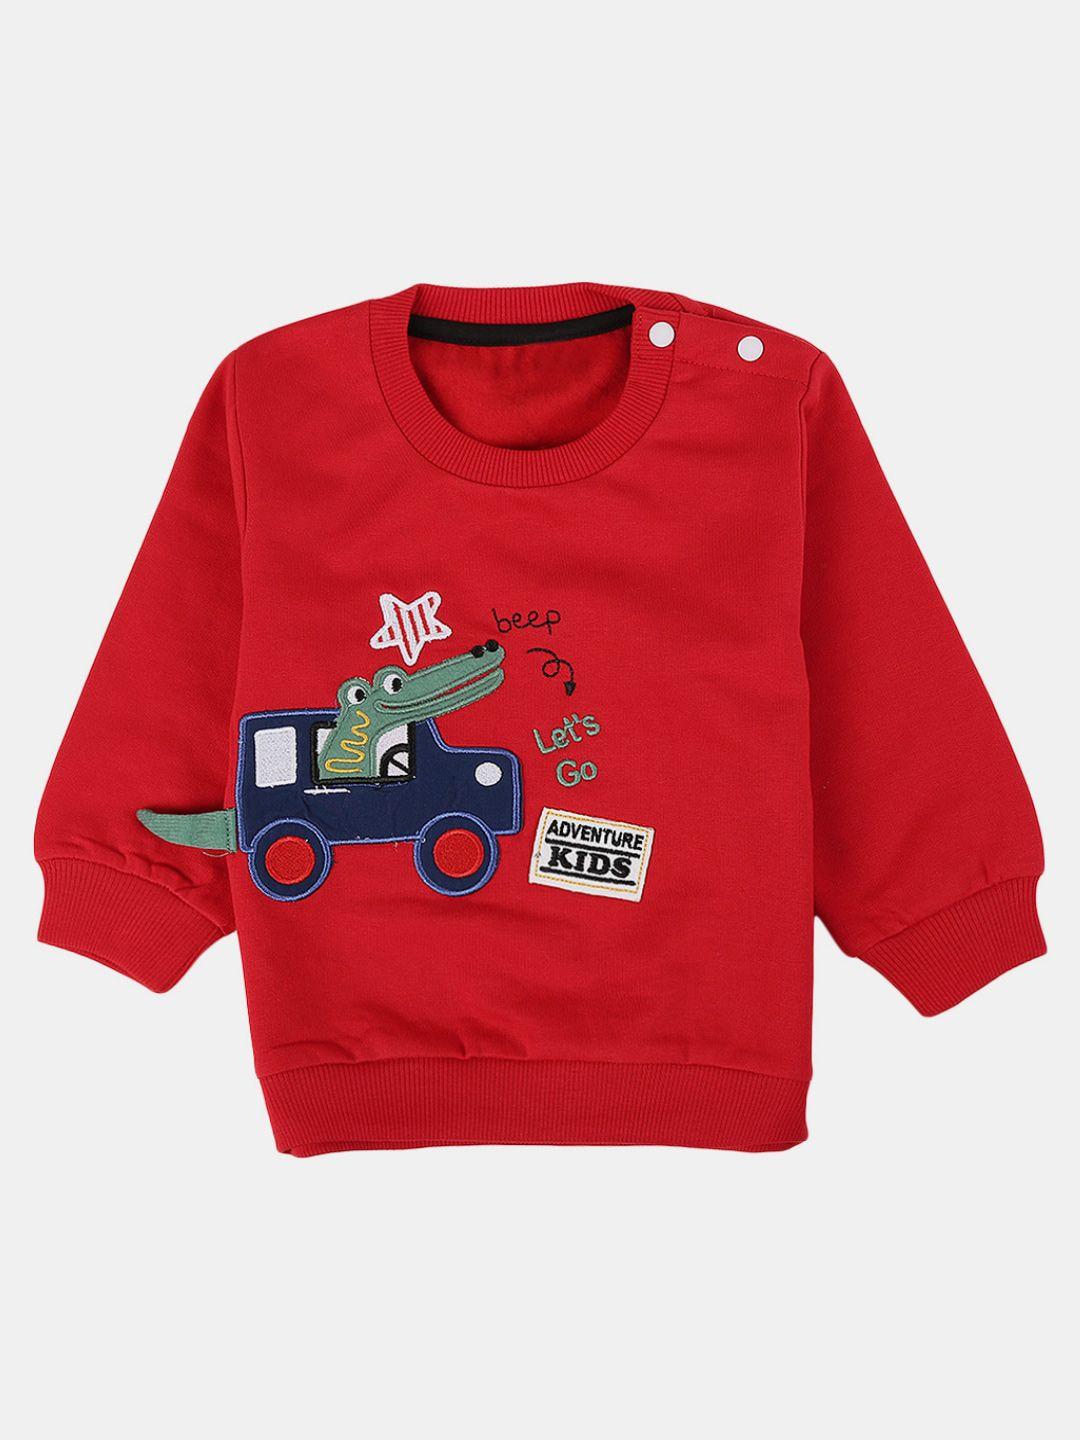 v-mart unisex kids embroidered fleece sweatshirt